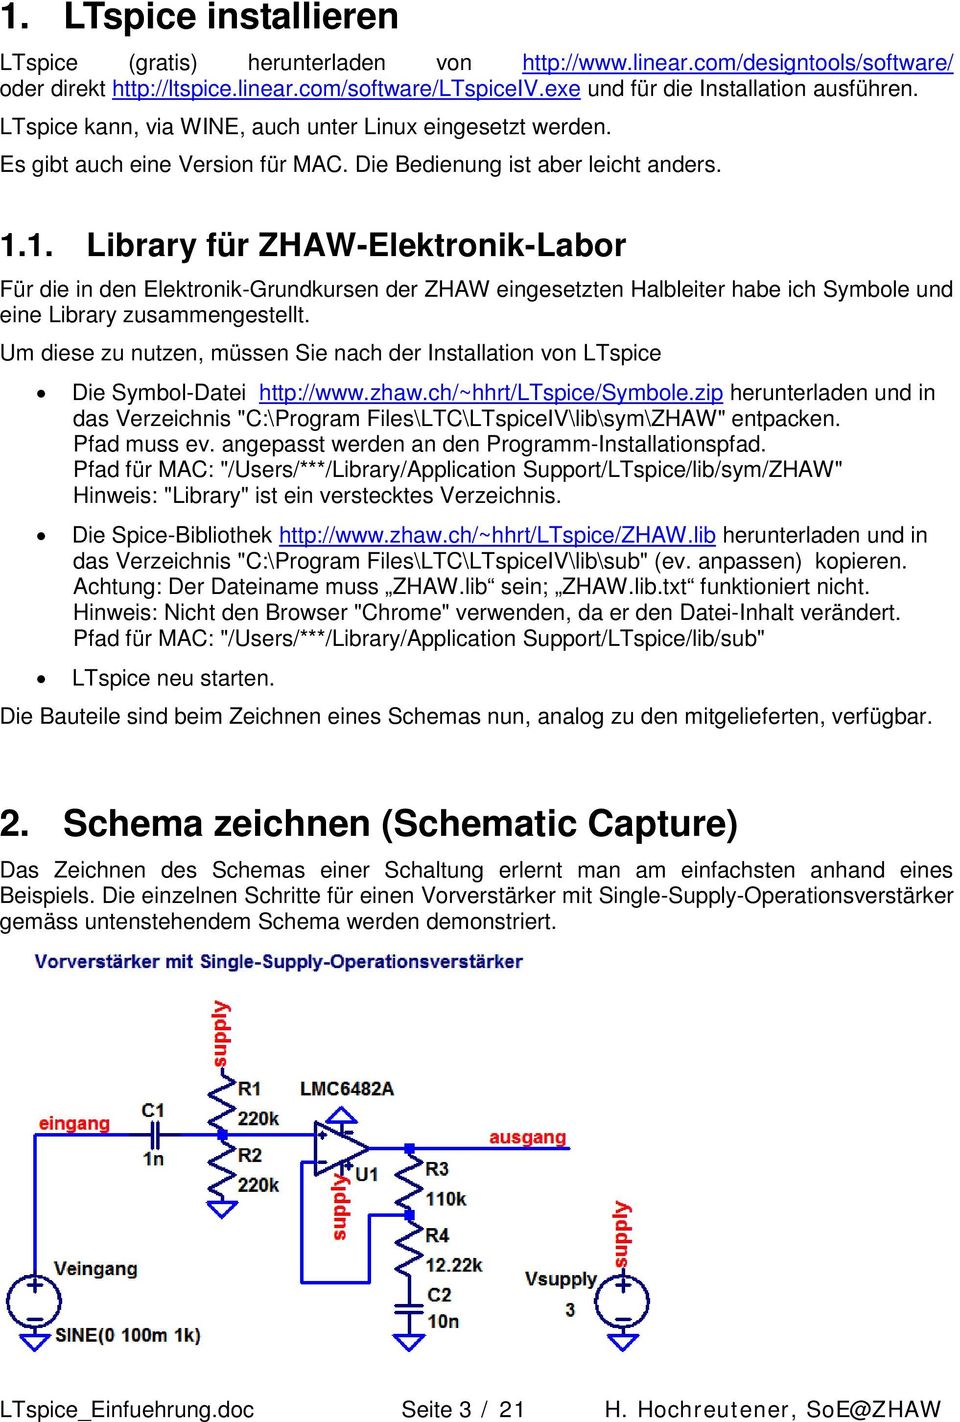 1. Library für ZHAW-Elektronik-Labor Für die in den Elektronik-Grundkursen der ZHAW eingesetzten Halbleiter habe ich Symbole und eine Library zusammengestellt.